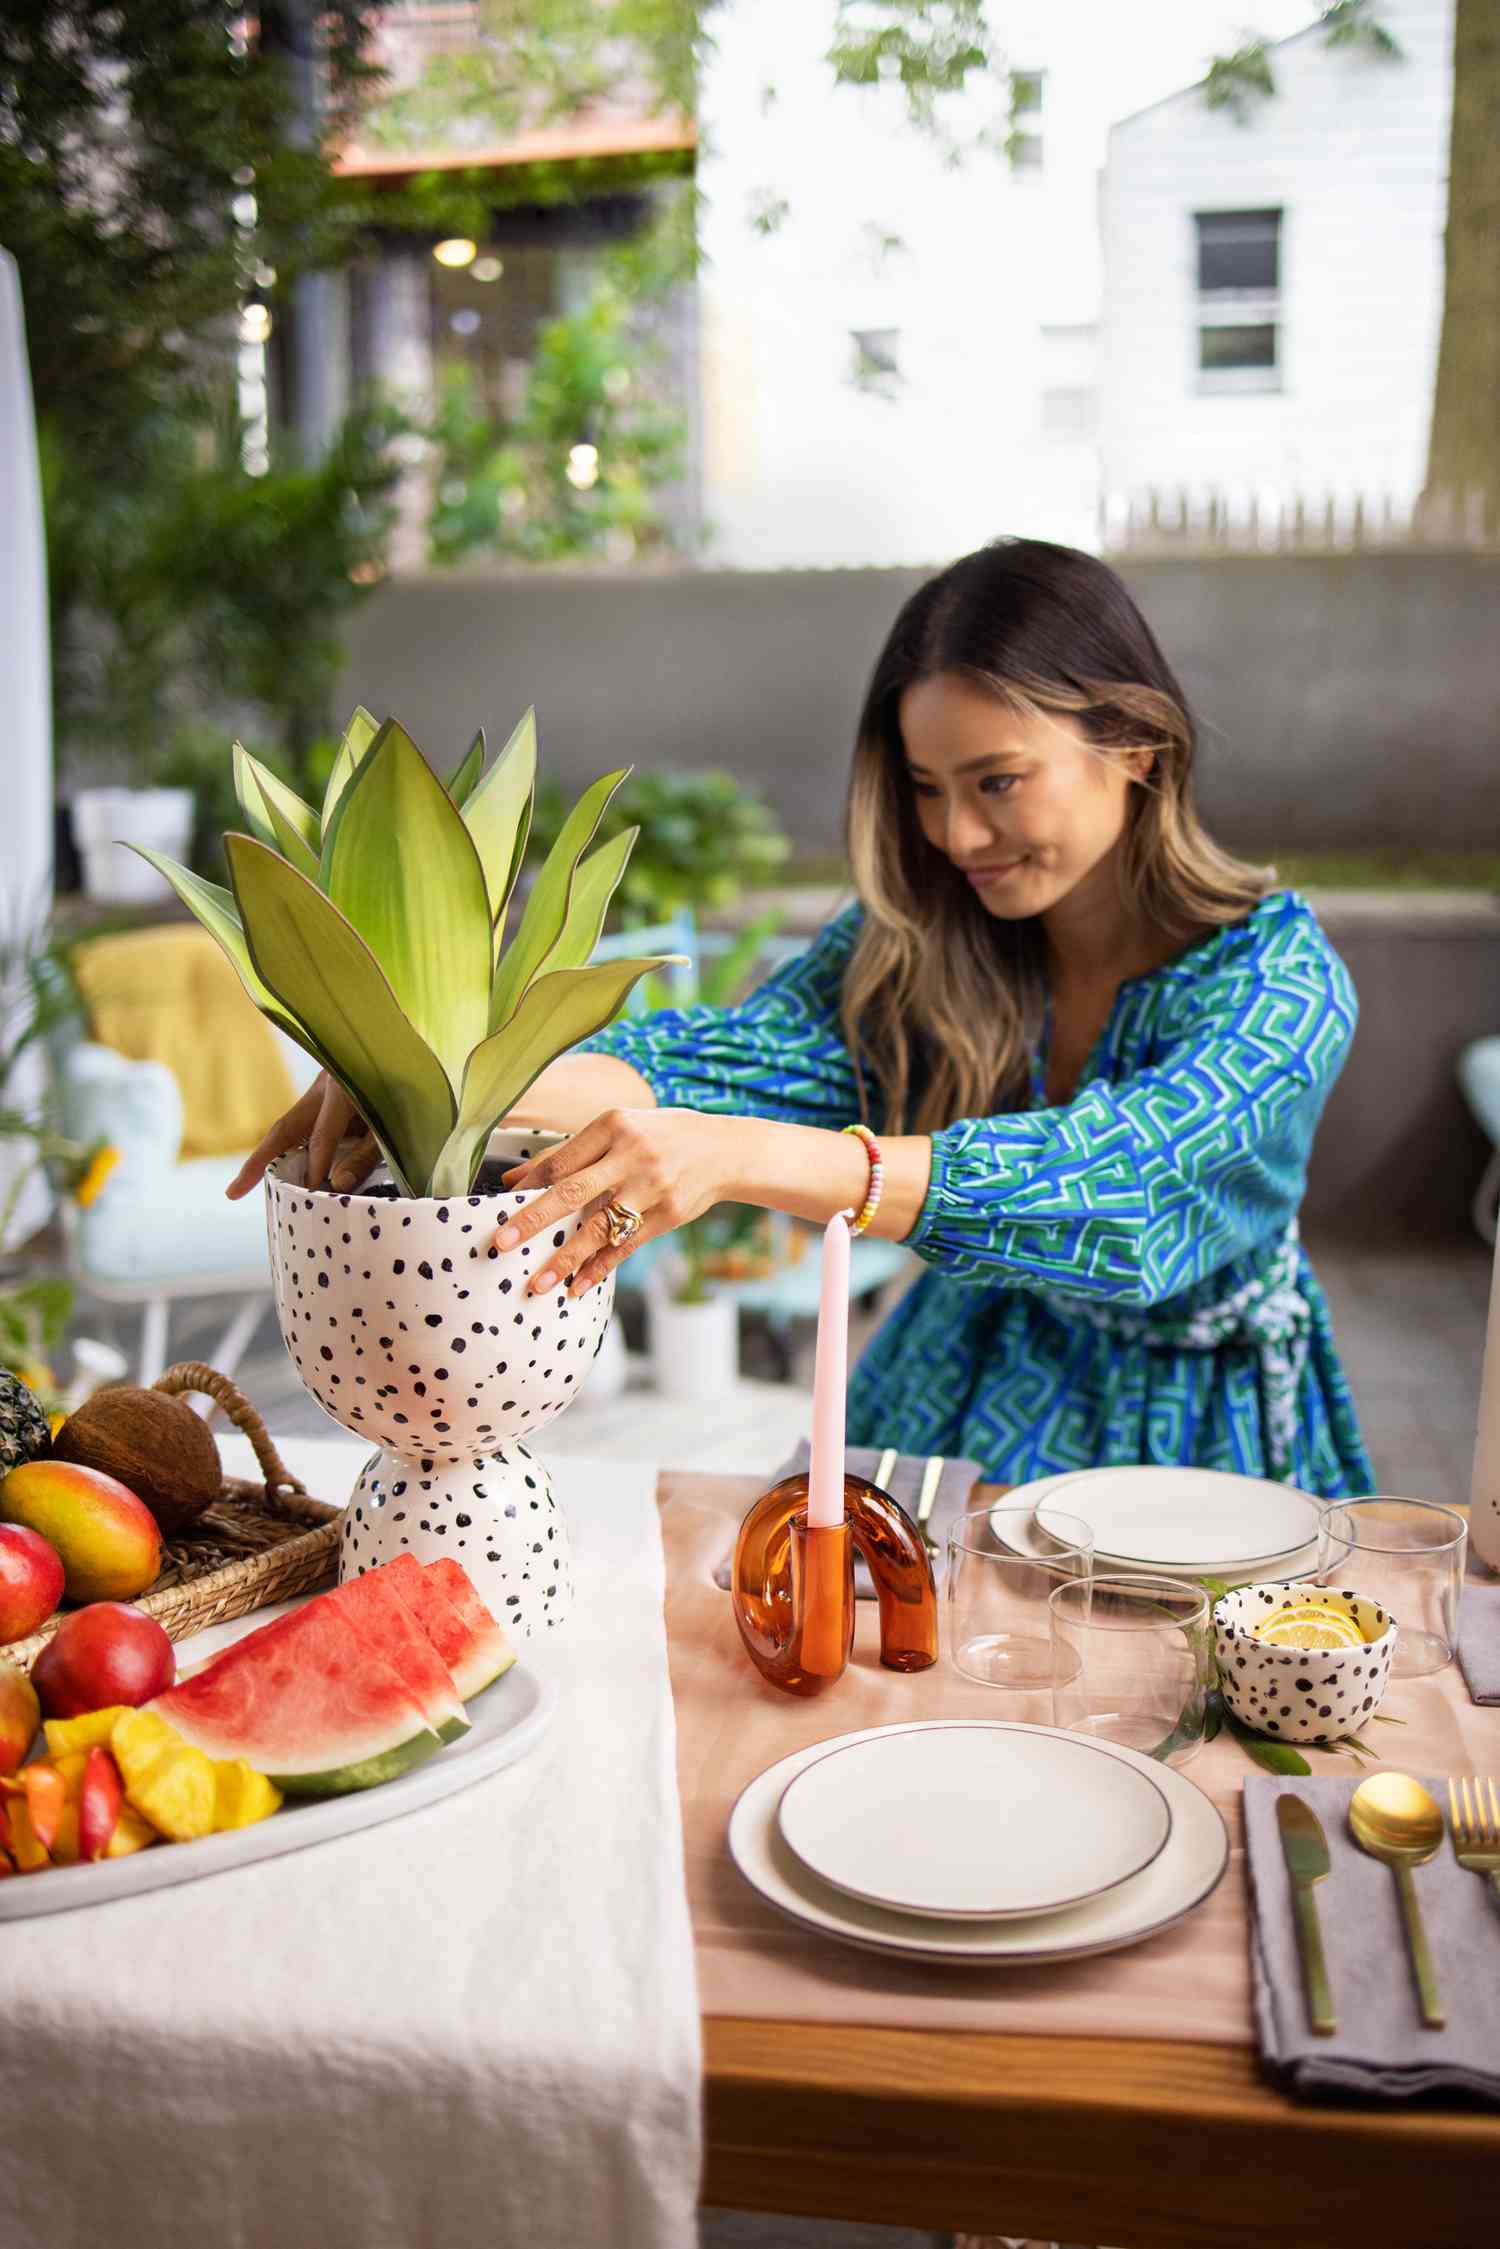 Jamie Chung arrangiert einen Blumentopf auf ihrem Esstisch im Hinterhof